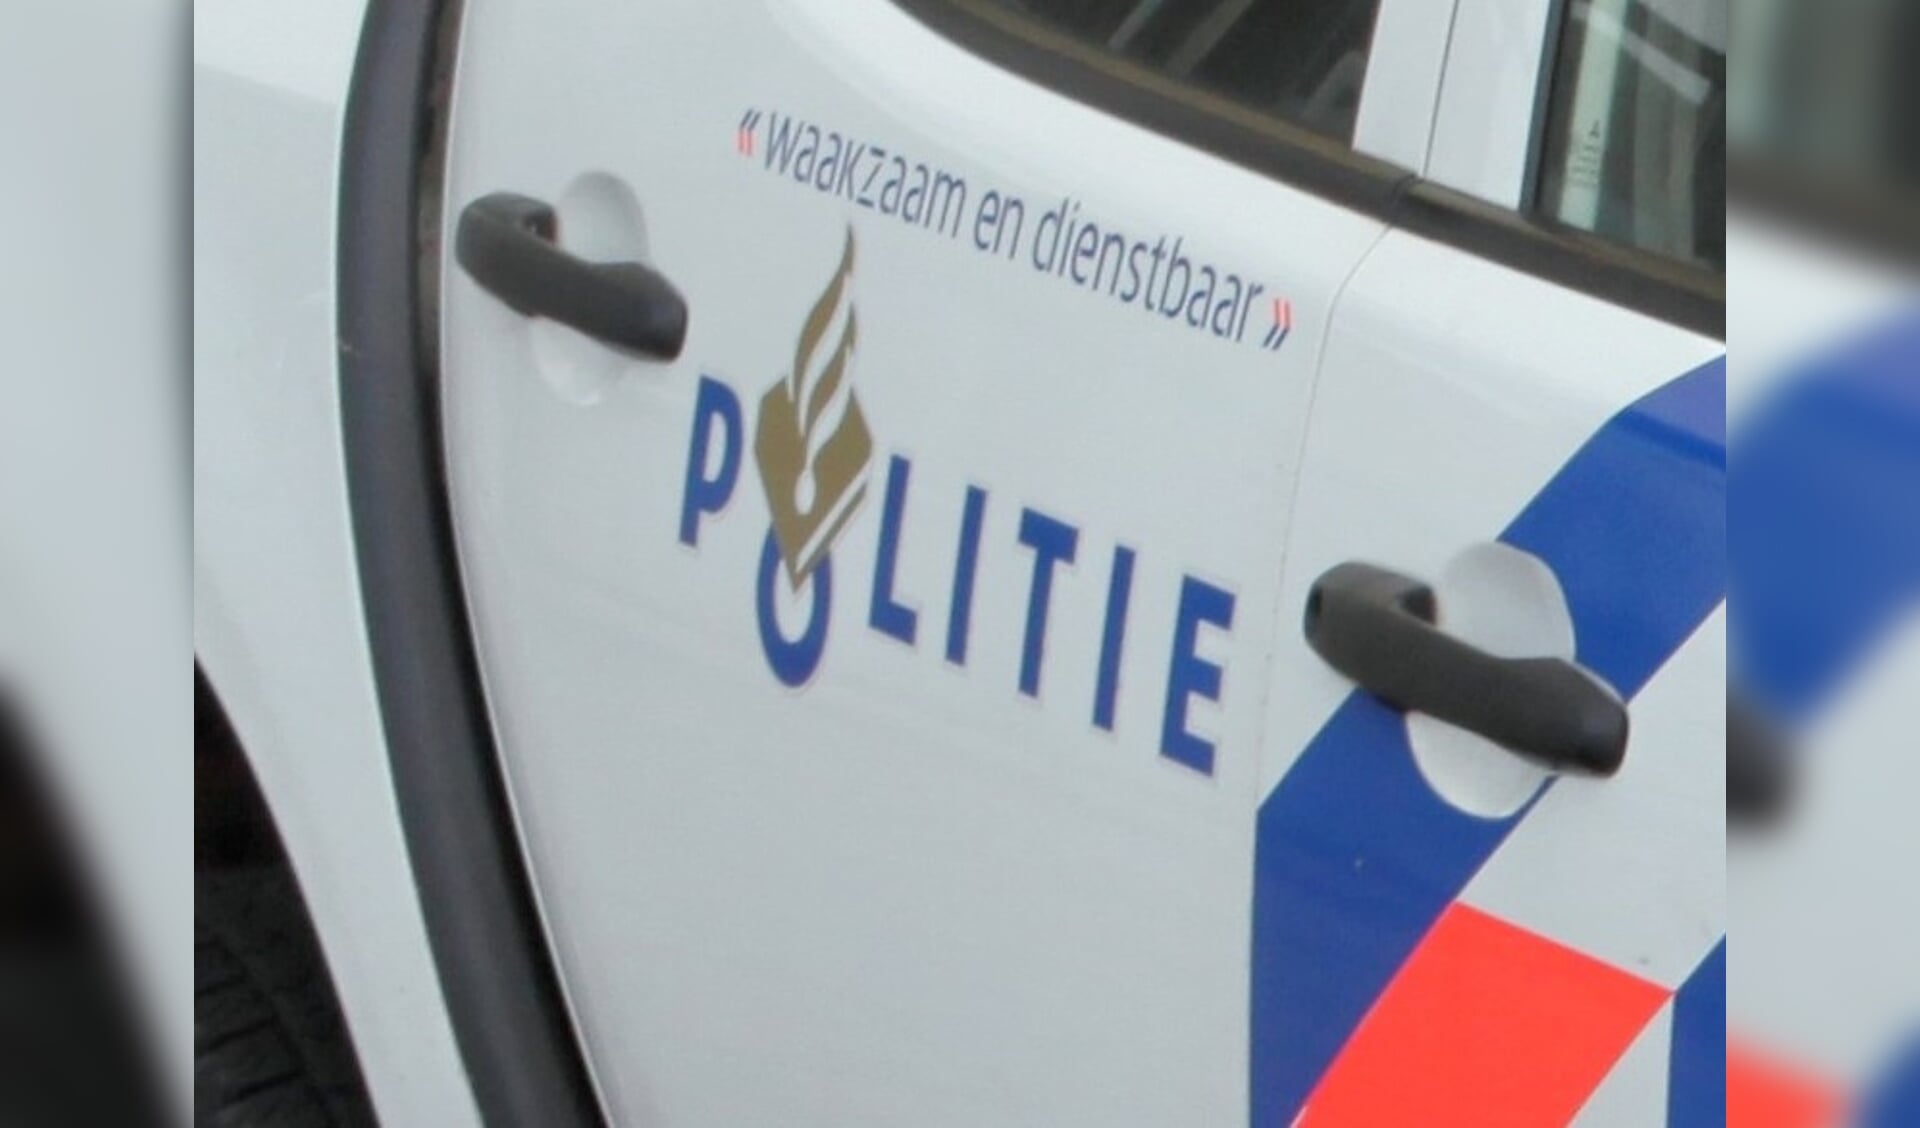 Twee verdachten, waaronder iemand uit Waddinxveen, is aangehouden. 